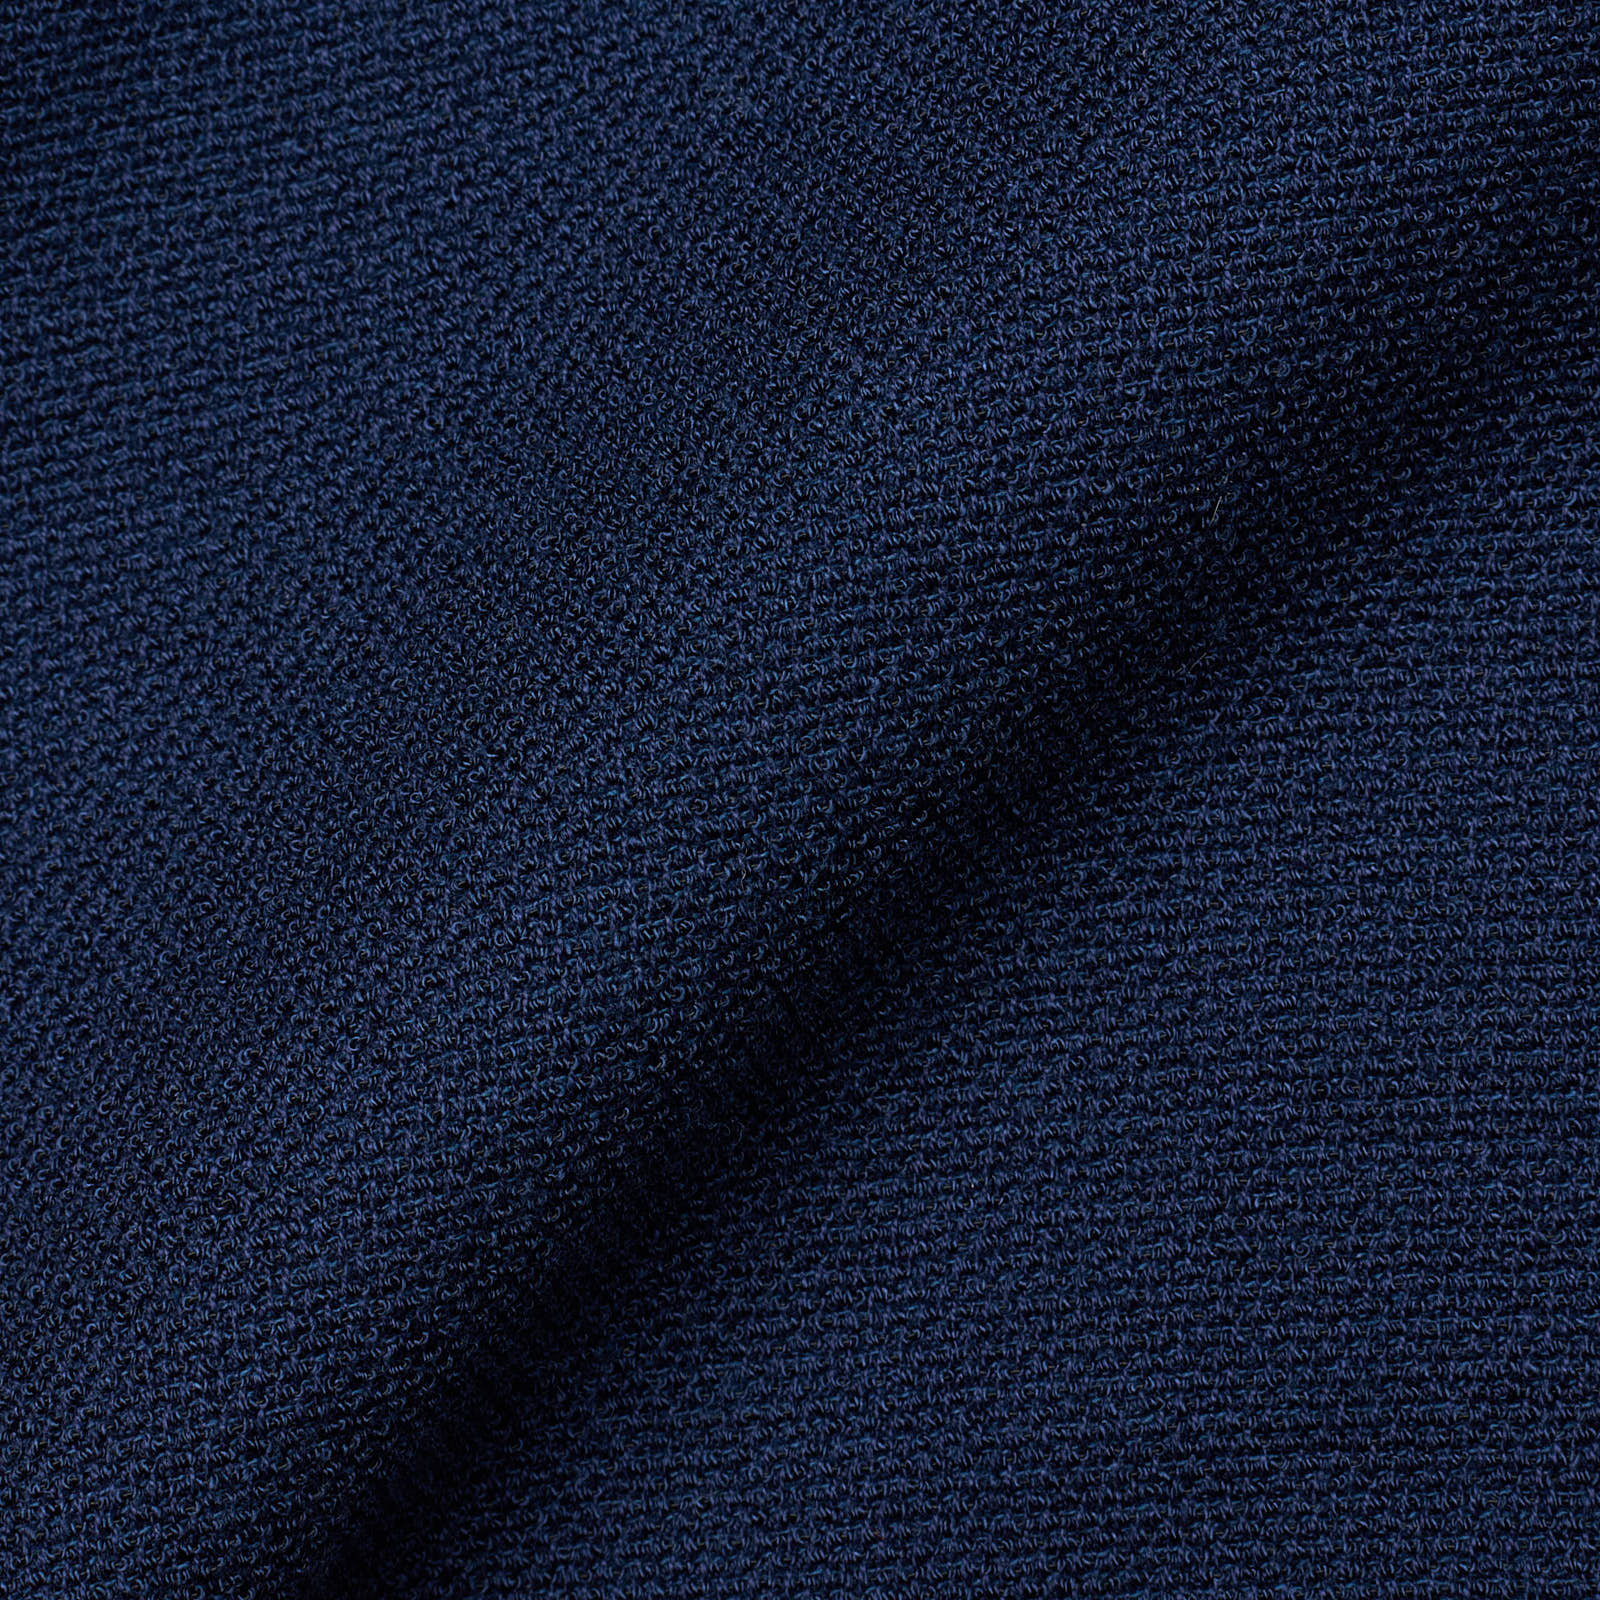 SARTORIA PARTENOPEA Blue Cotton Jacket EU 54 NEW US 44 Current Model